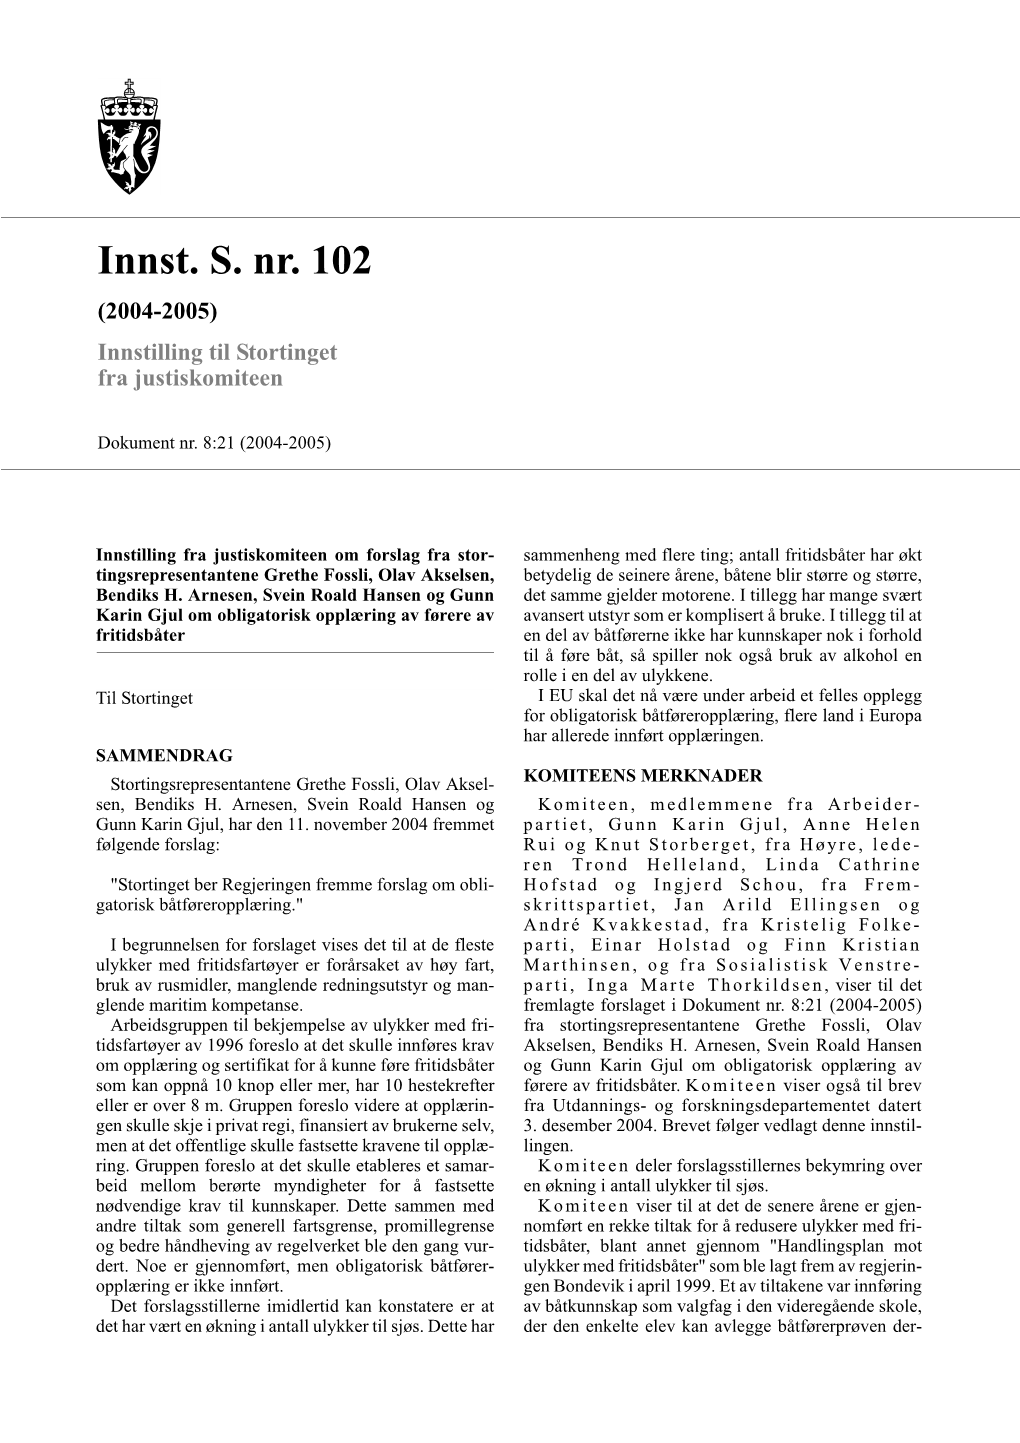 Innst. S. Nr. 102 (2004-2005) Innstilling Til Stortinget Fra Justiskomiteen